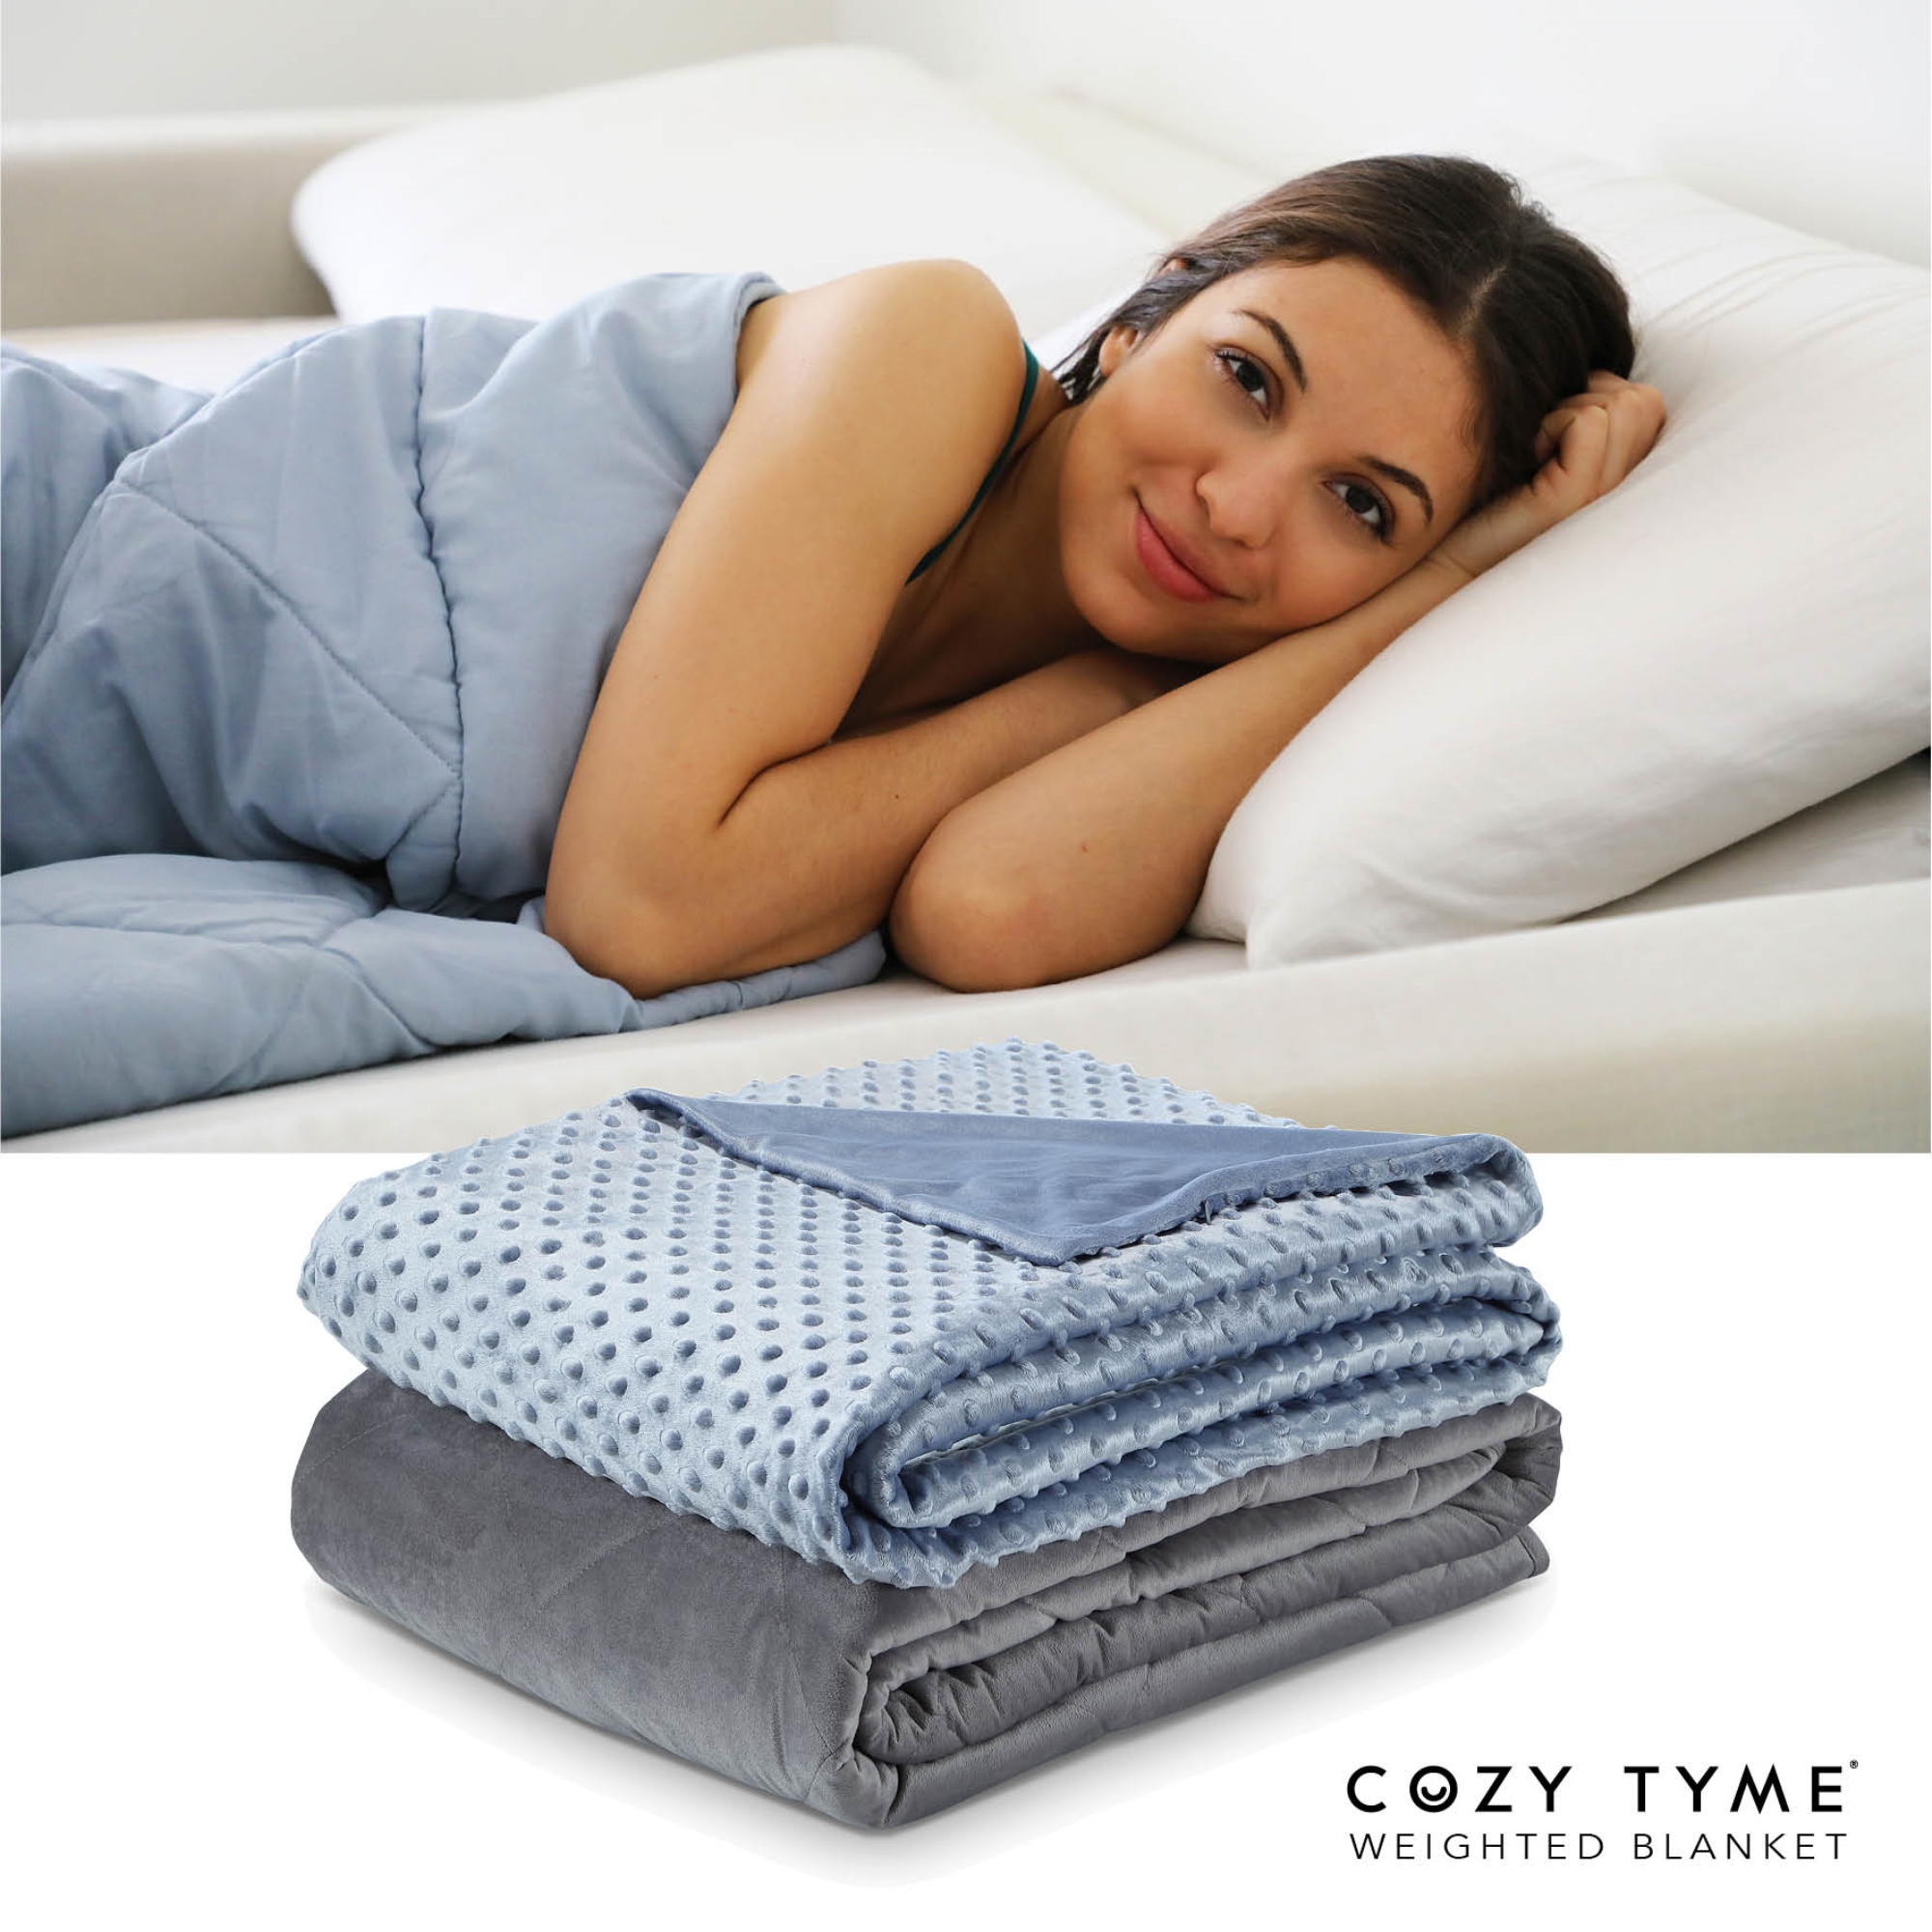 Cozy Tyme Light Blue Duvet: 100% Polyester, Blanket: 100% Cotton Throws 25 Pound Calm Sleeping